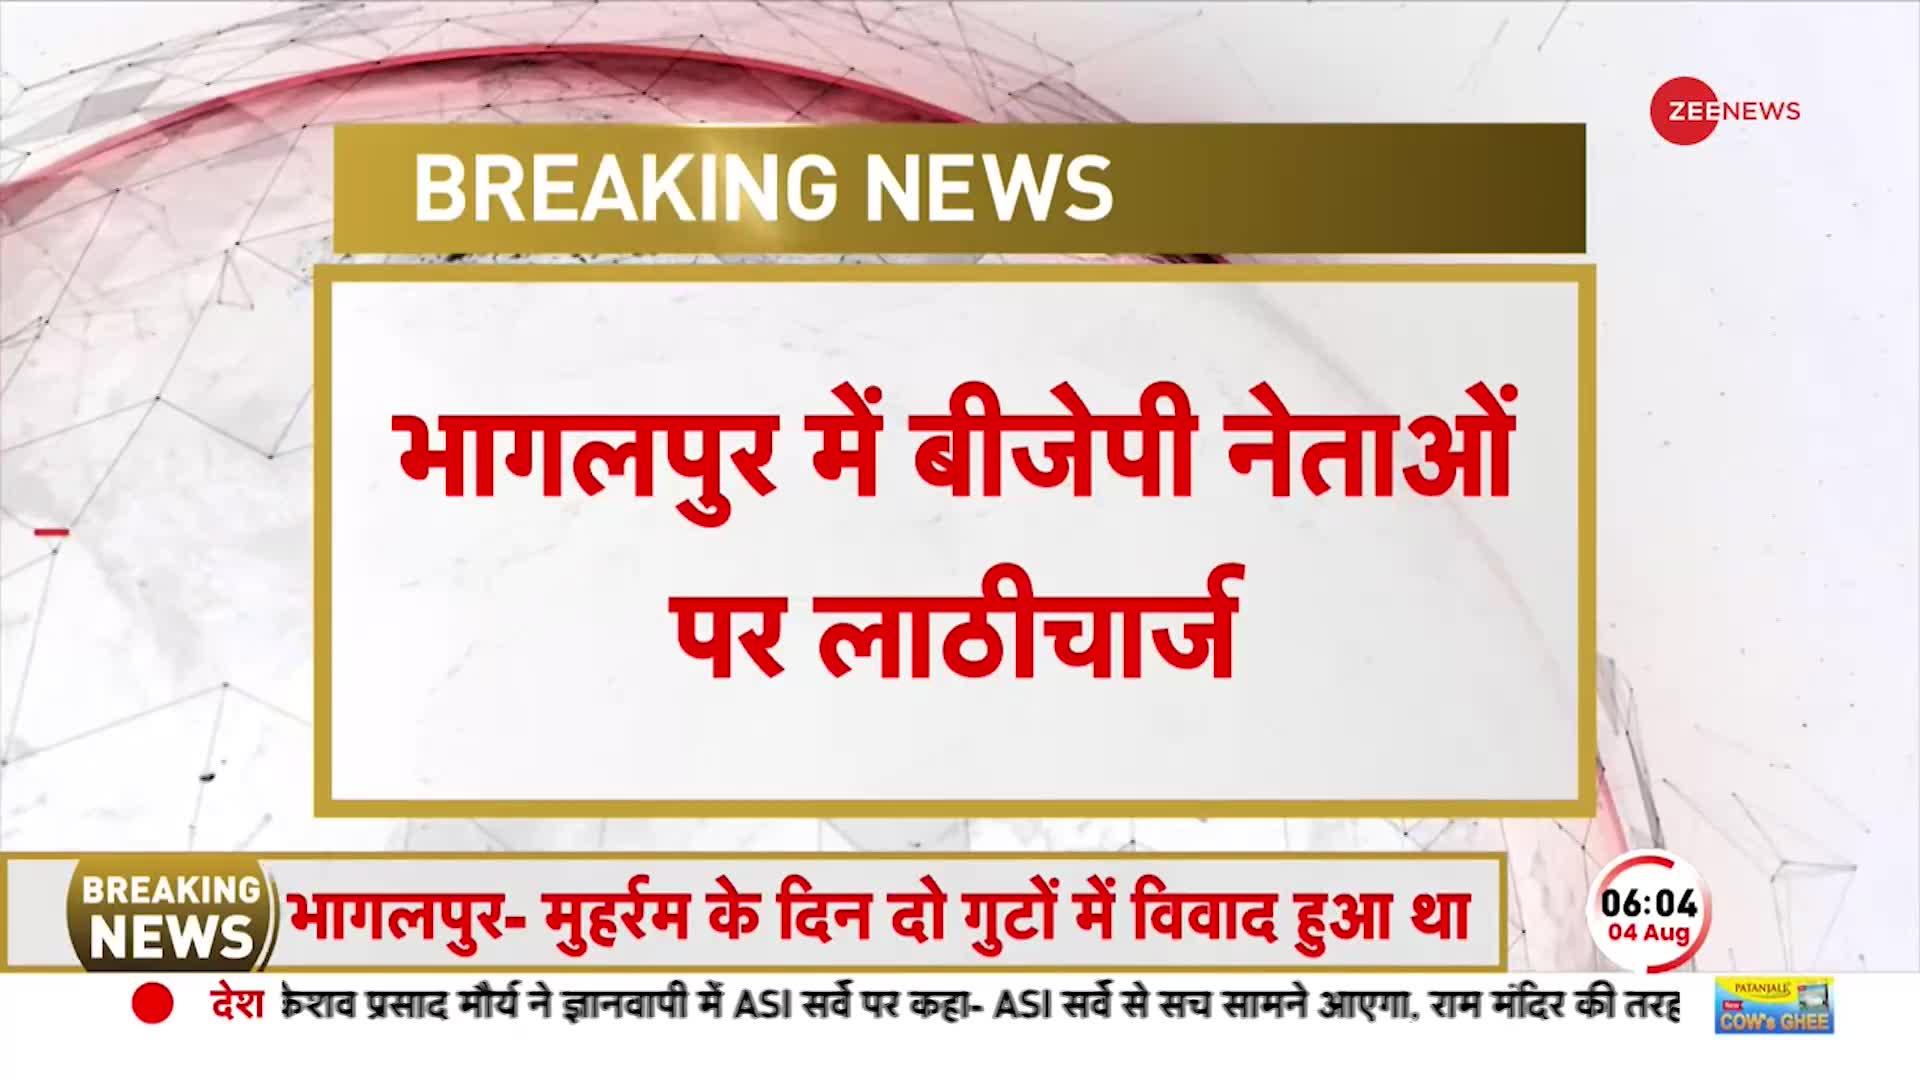 Breaking News: भागलपुर में BJP नेताओं पर लाठीचार्ज, धर्मस्थल पर विवाद के बाद बढ़ा तनाव